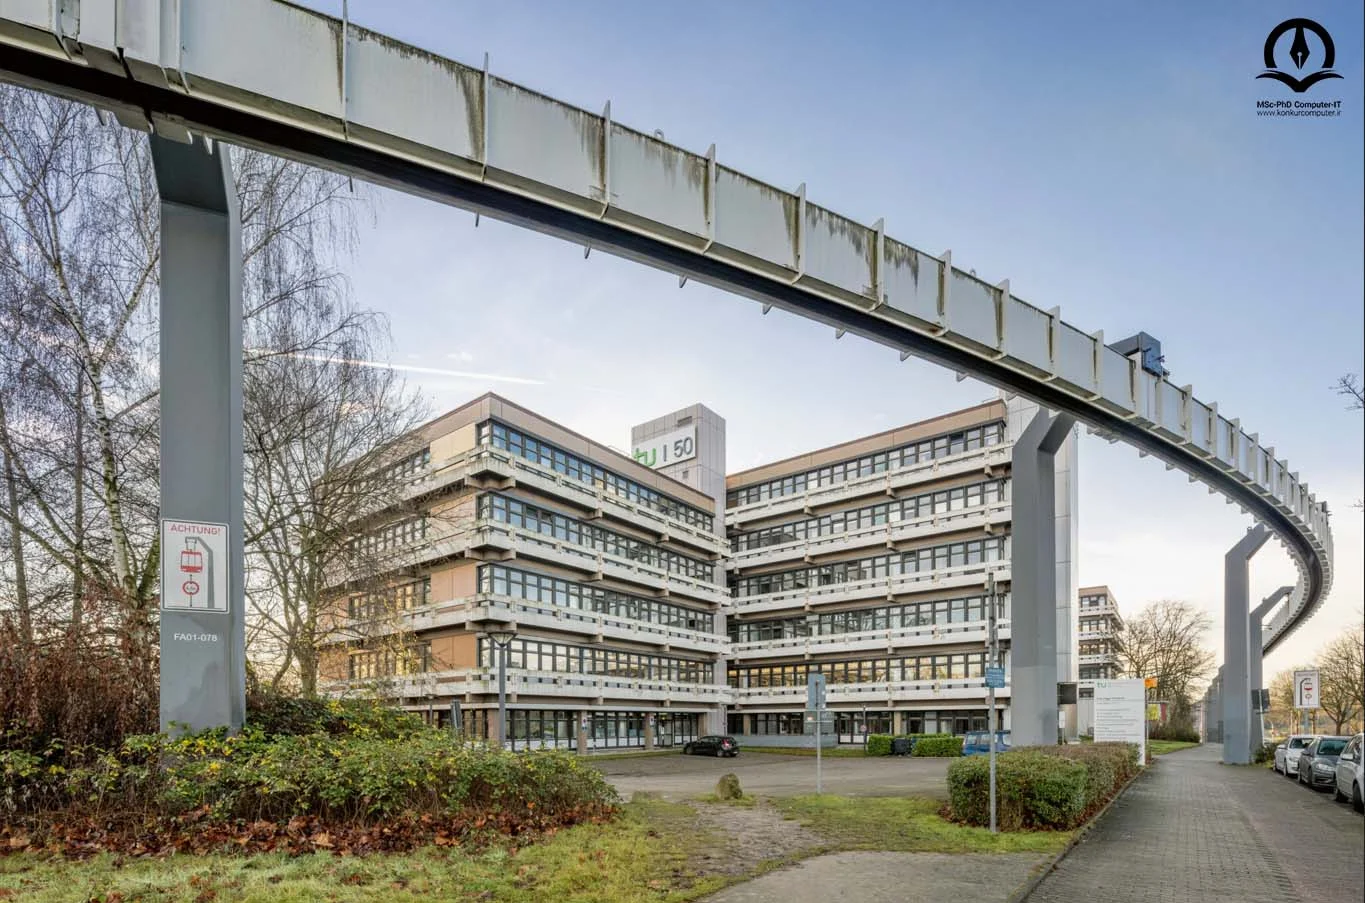 تصویری از دانشگاه فنی دورتموند در آلمان